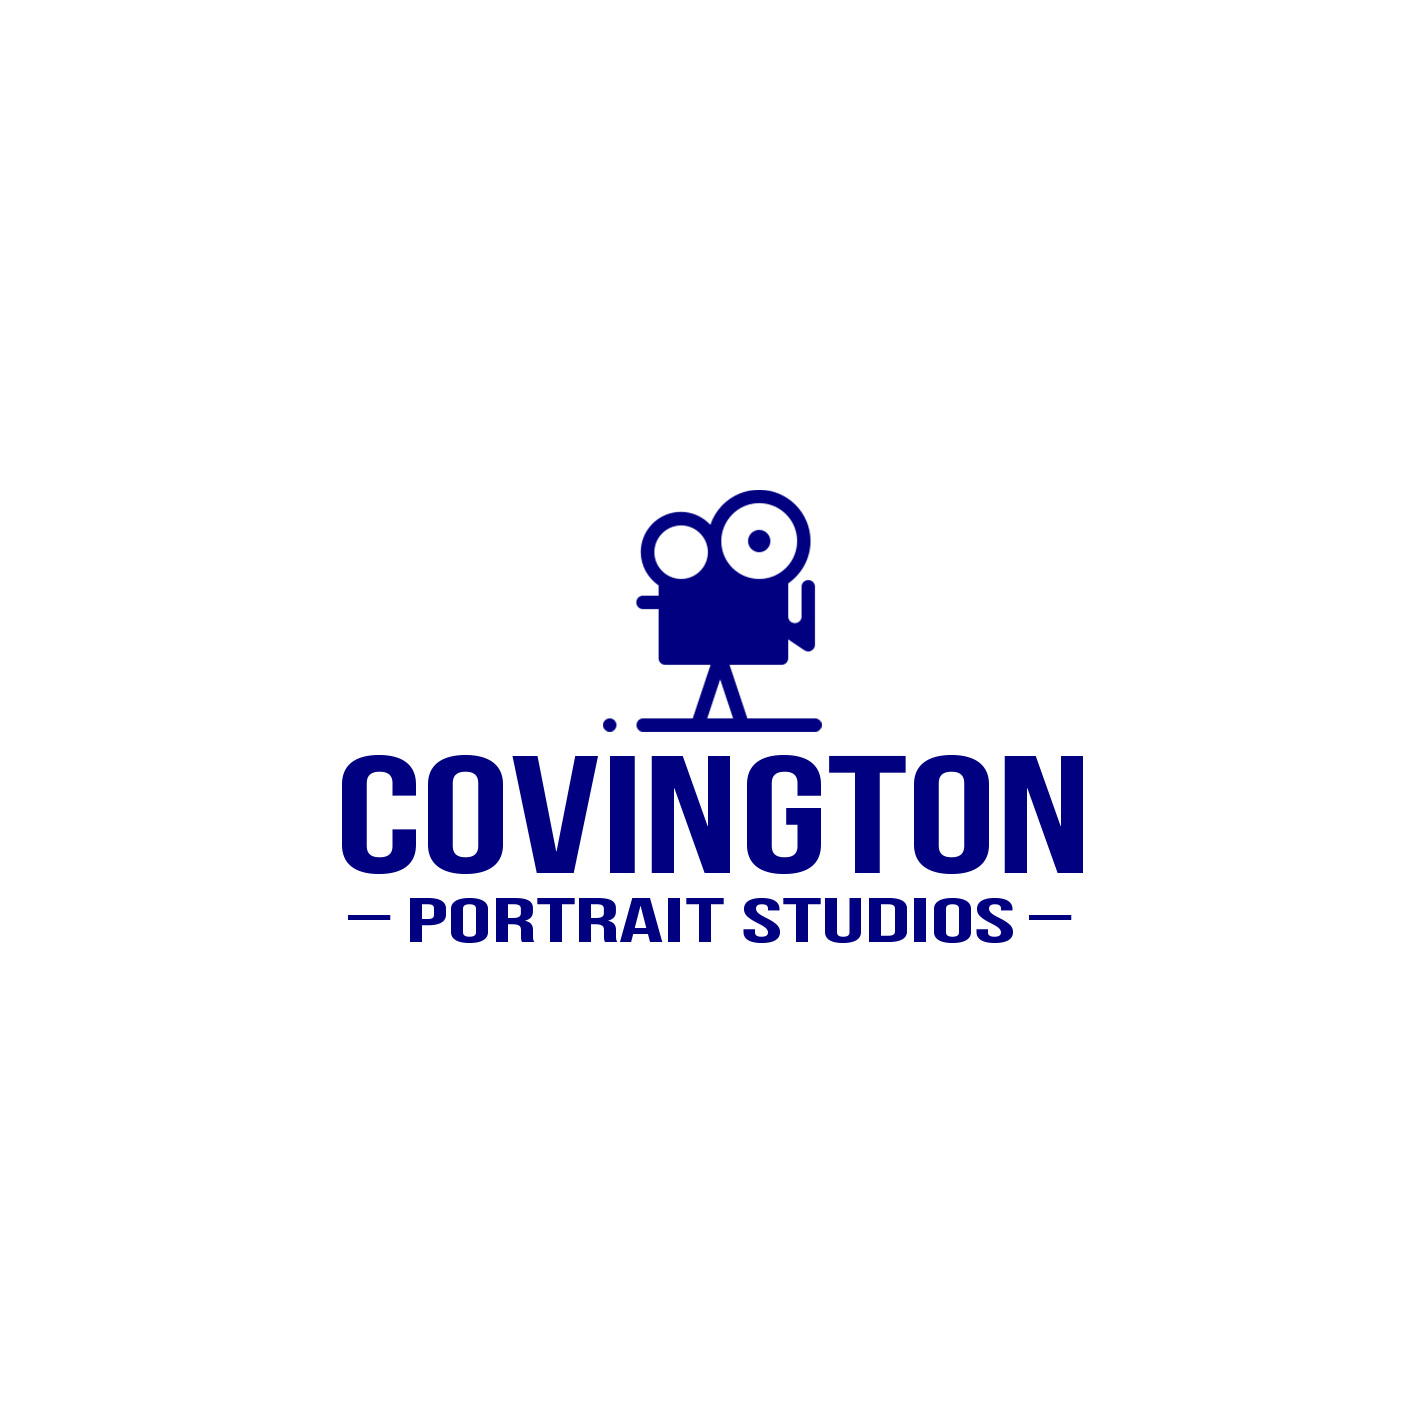 Covington Portrait Studios